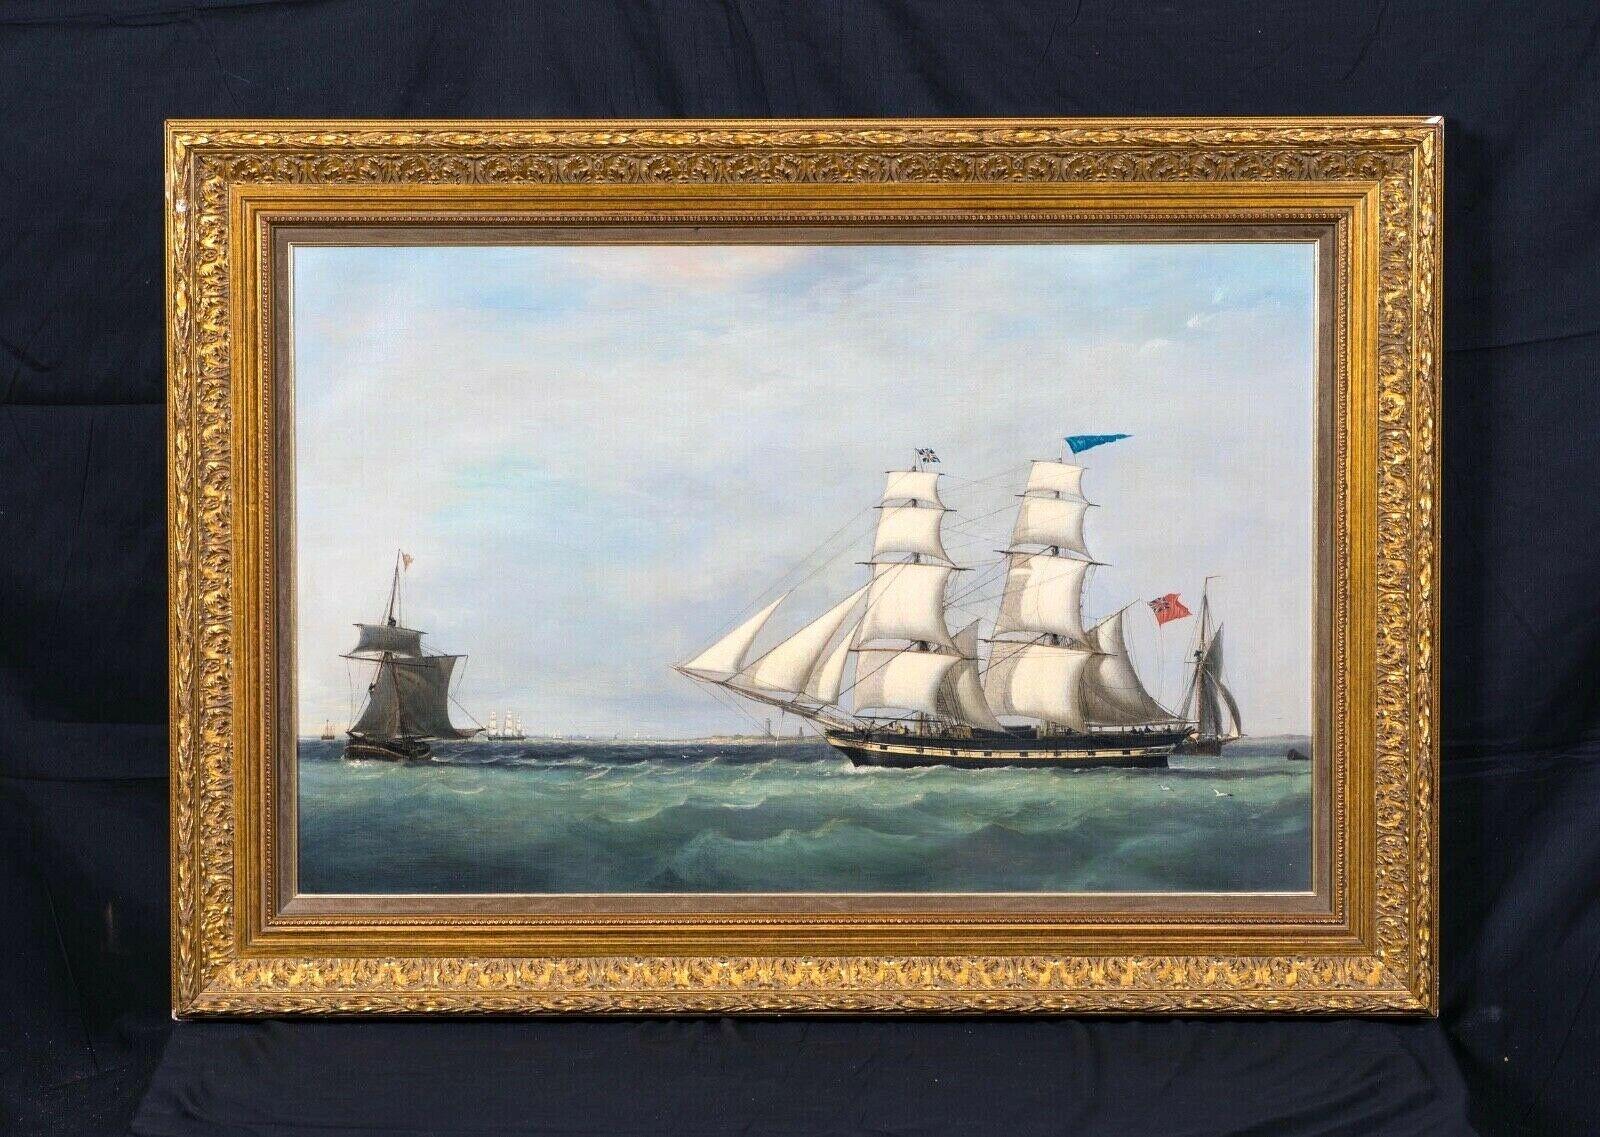 royal navy frigate 1800